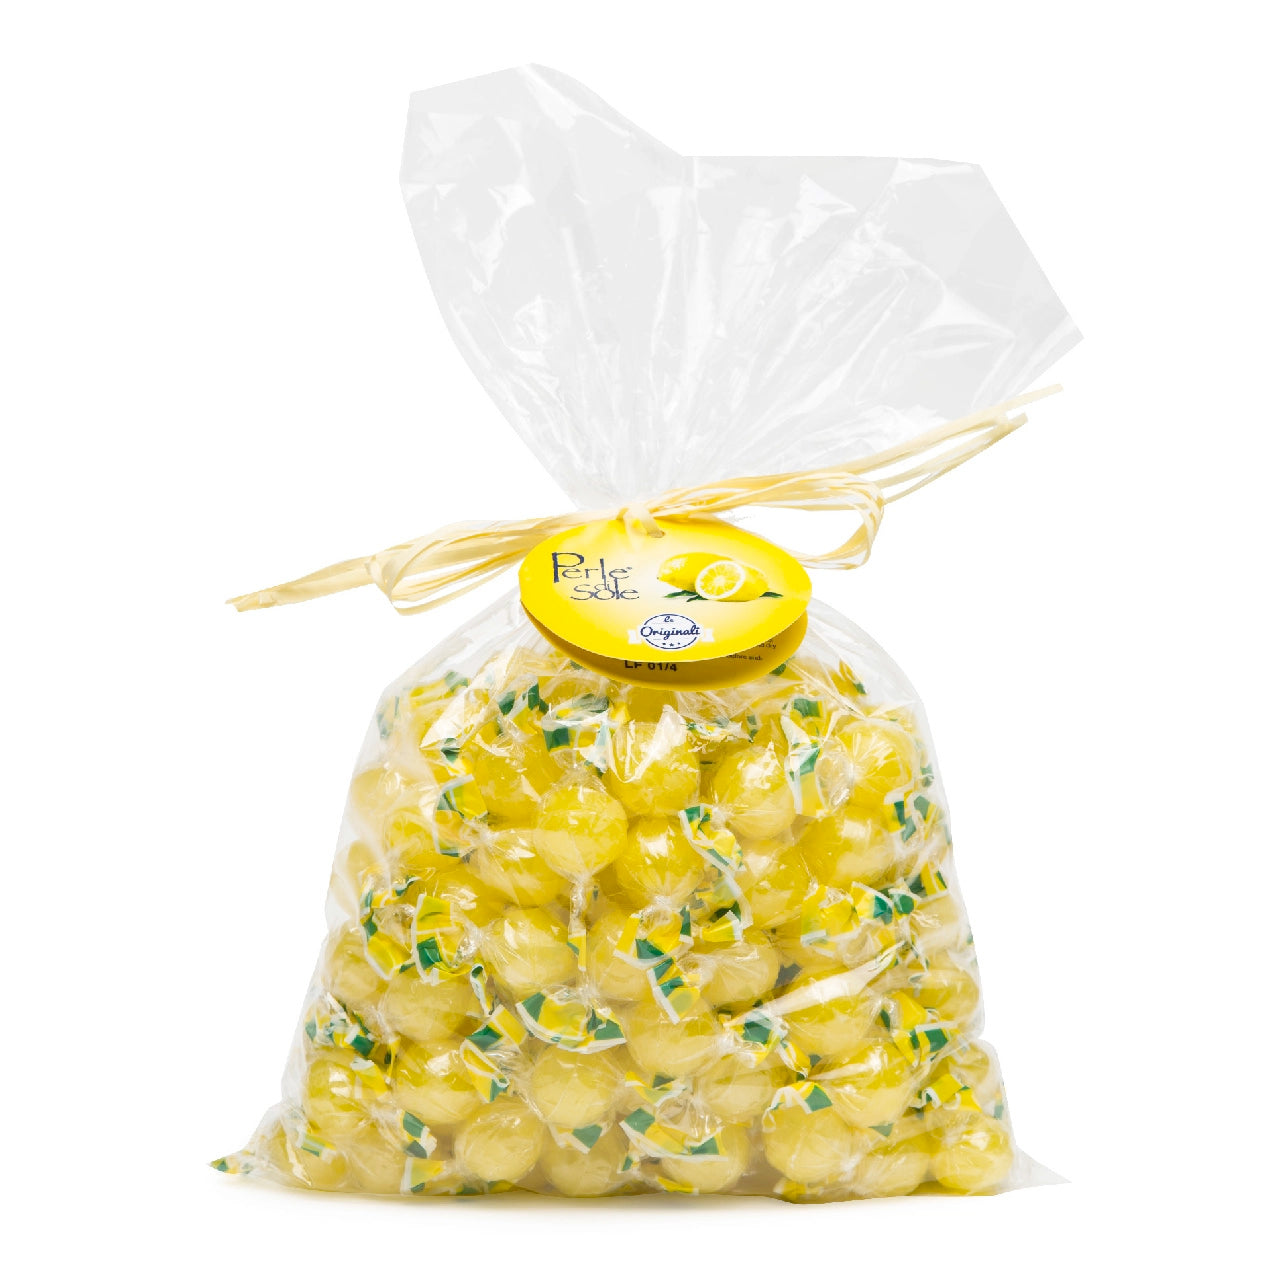 Original Lemon Drops from the Amalfi Coast, Bulk Bag